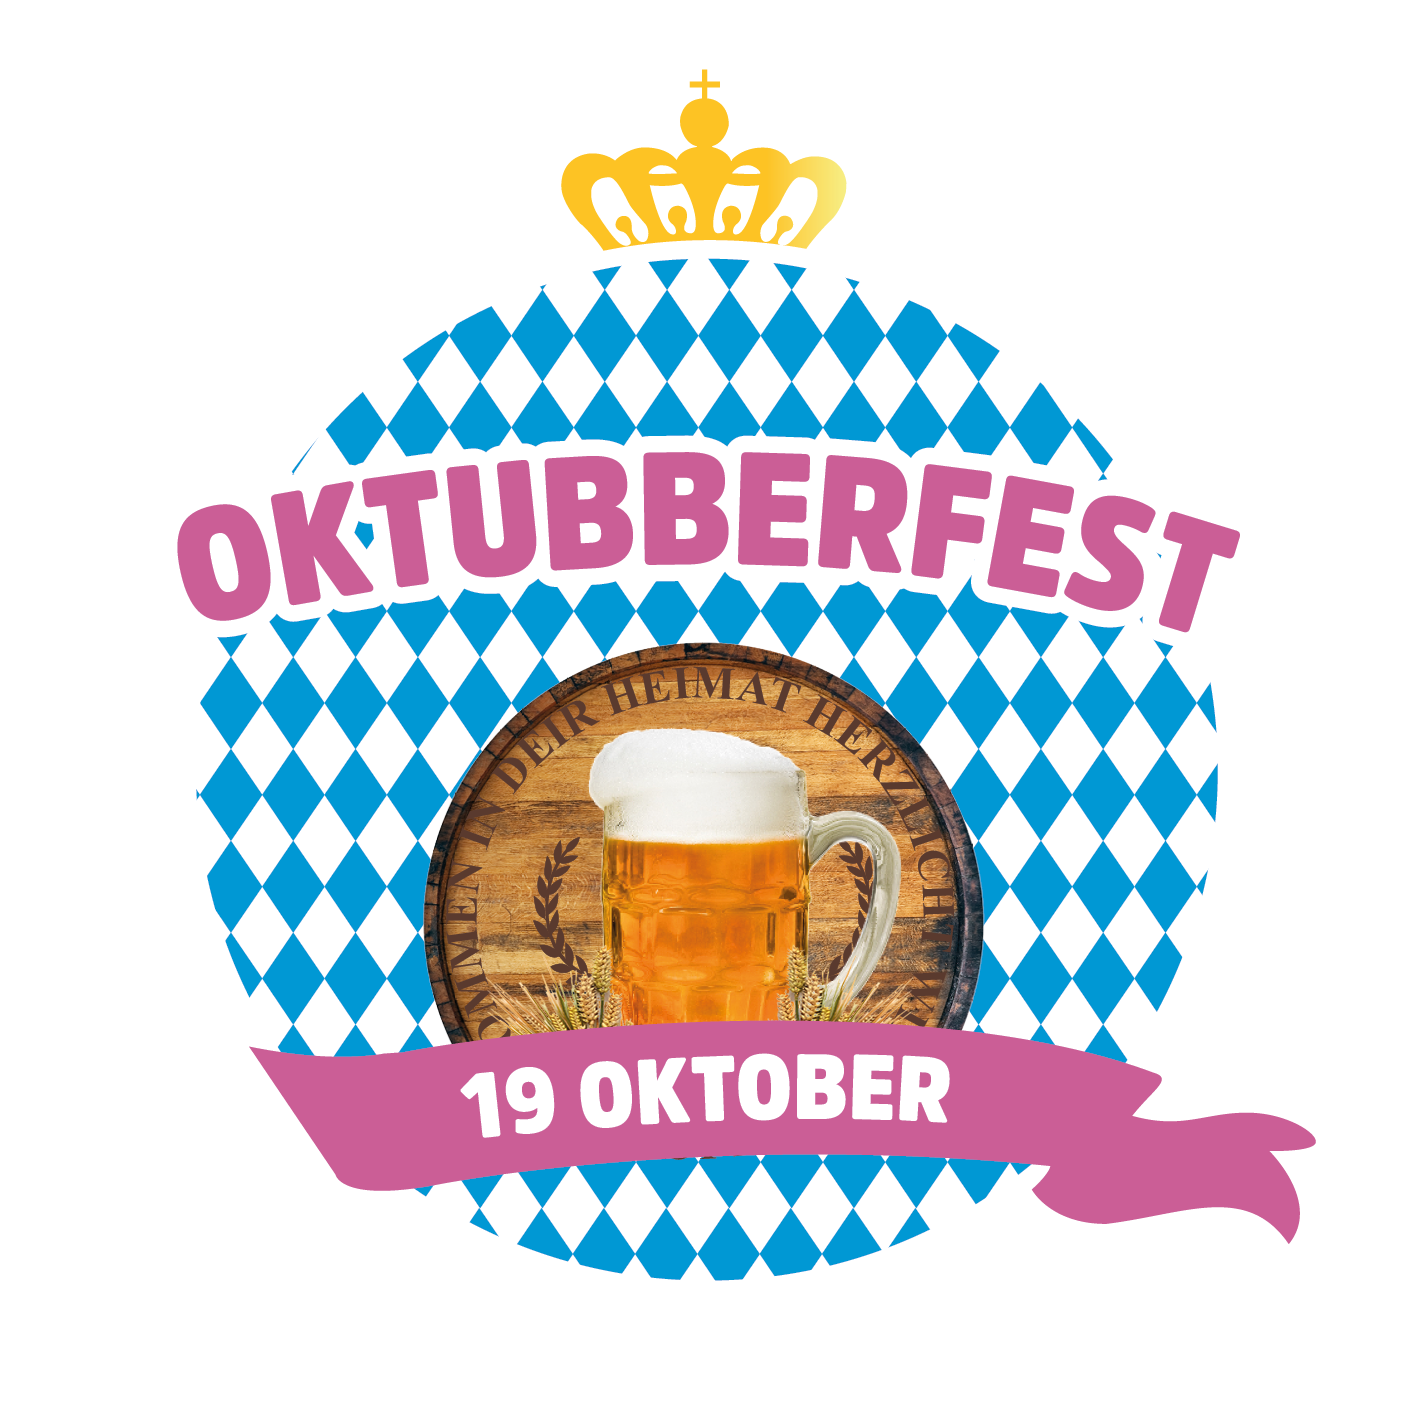 Oktubberfest